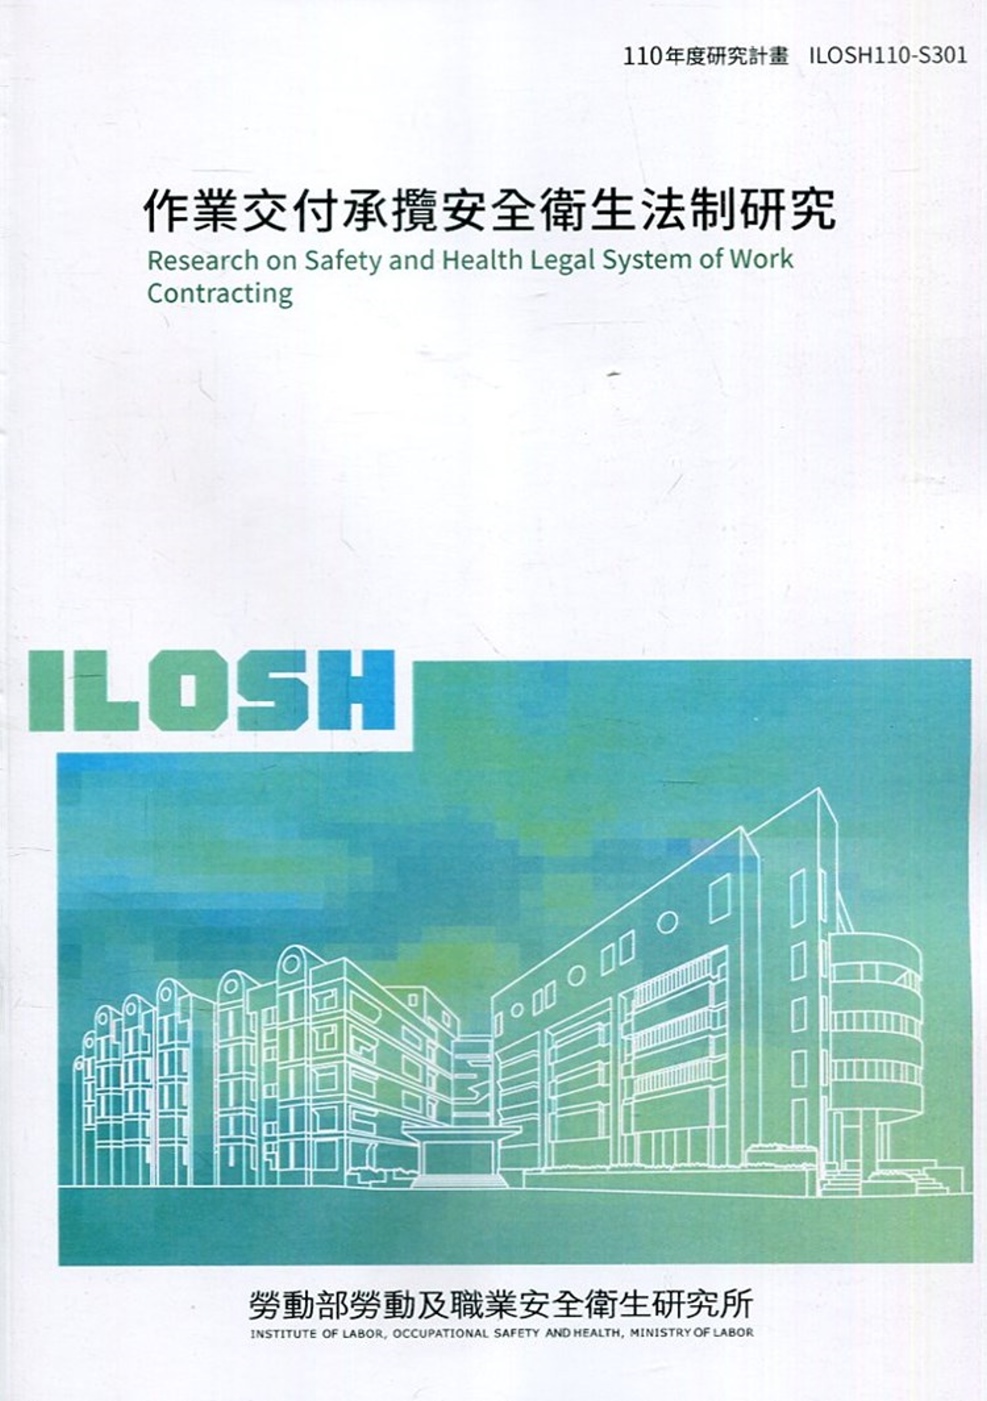 作業交付承攬安全衛生法制研究 ILOSH110-S301